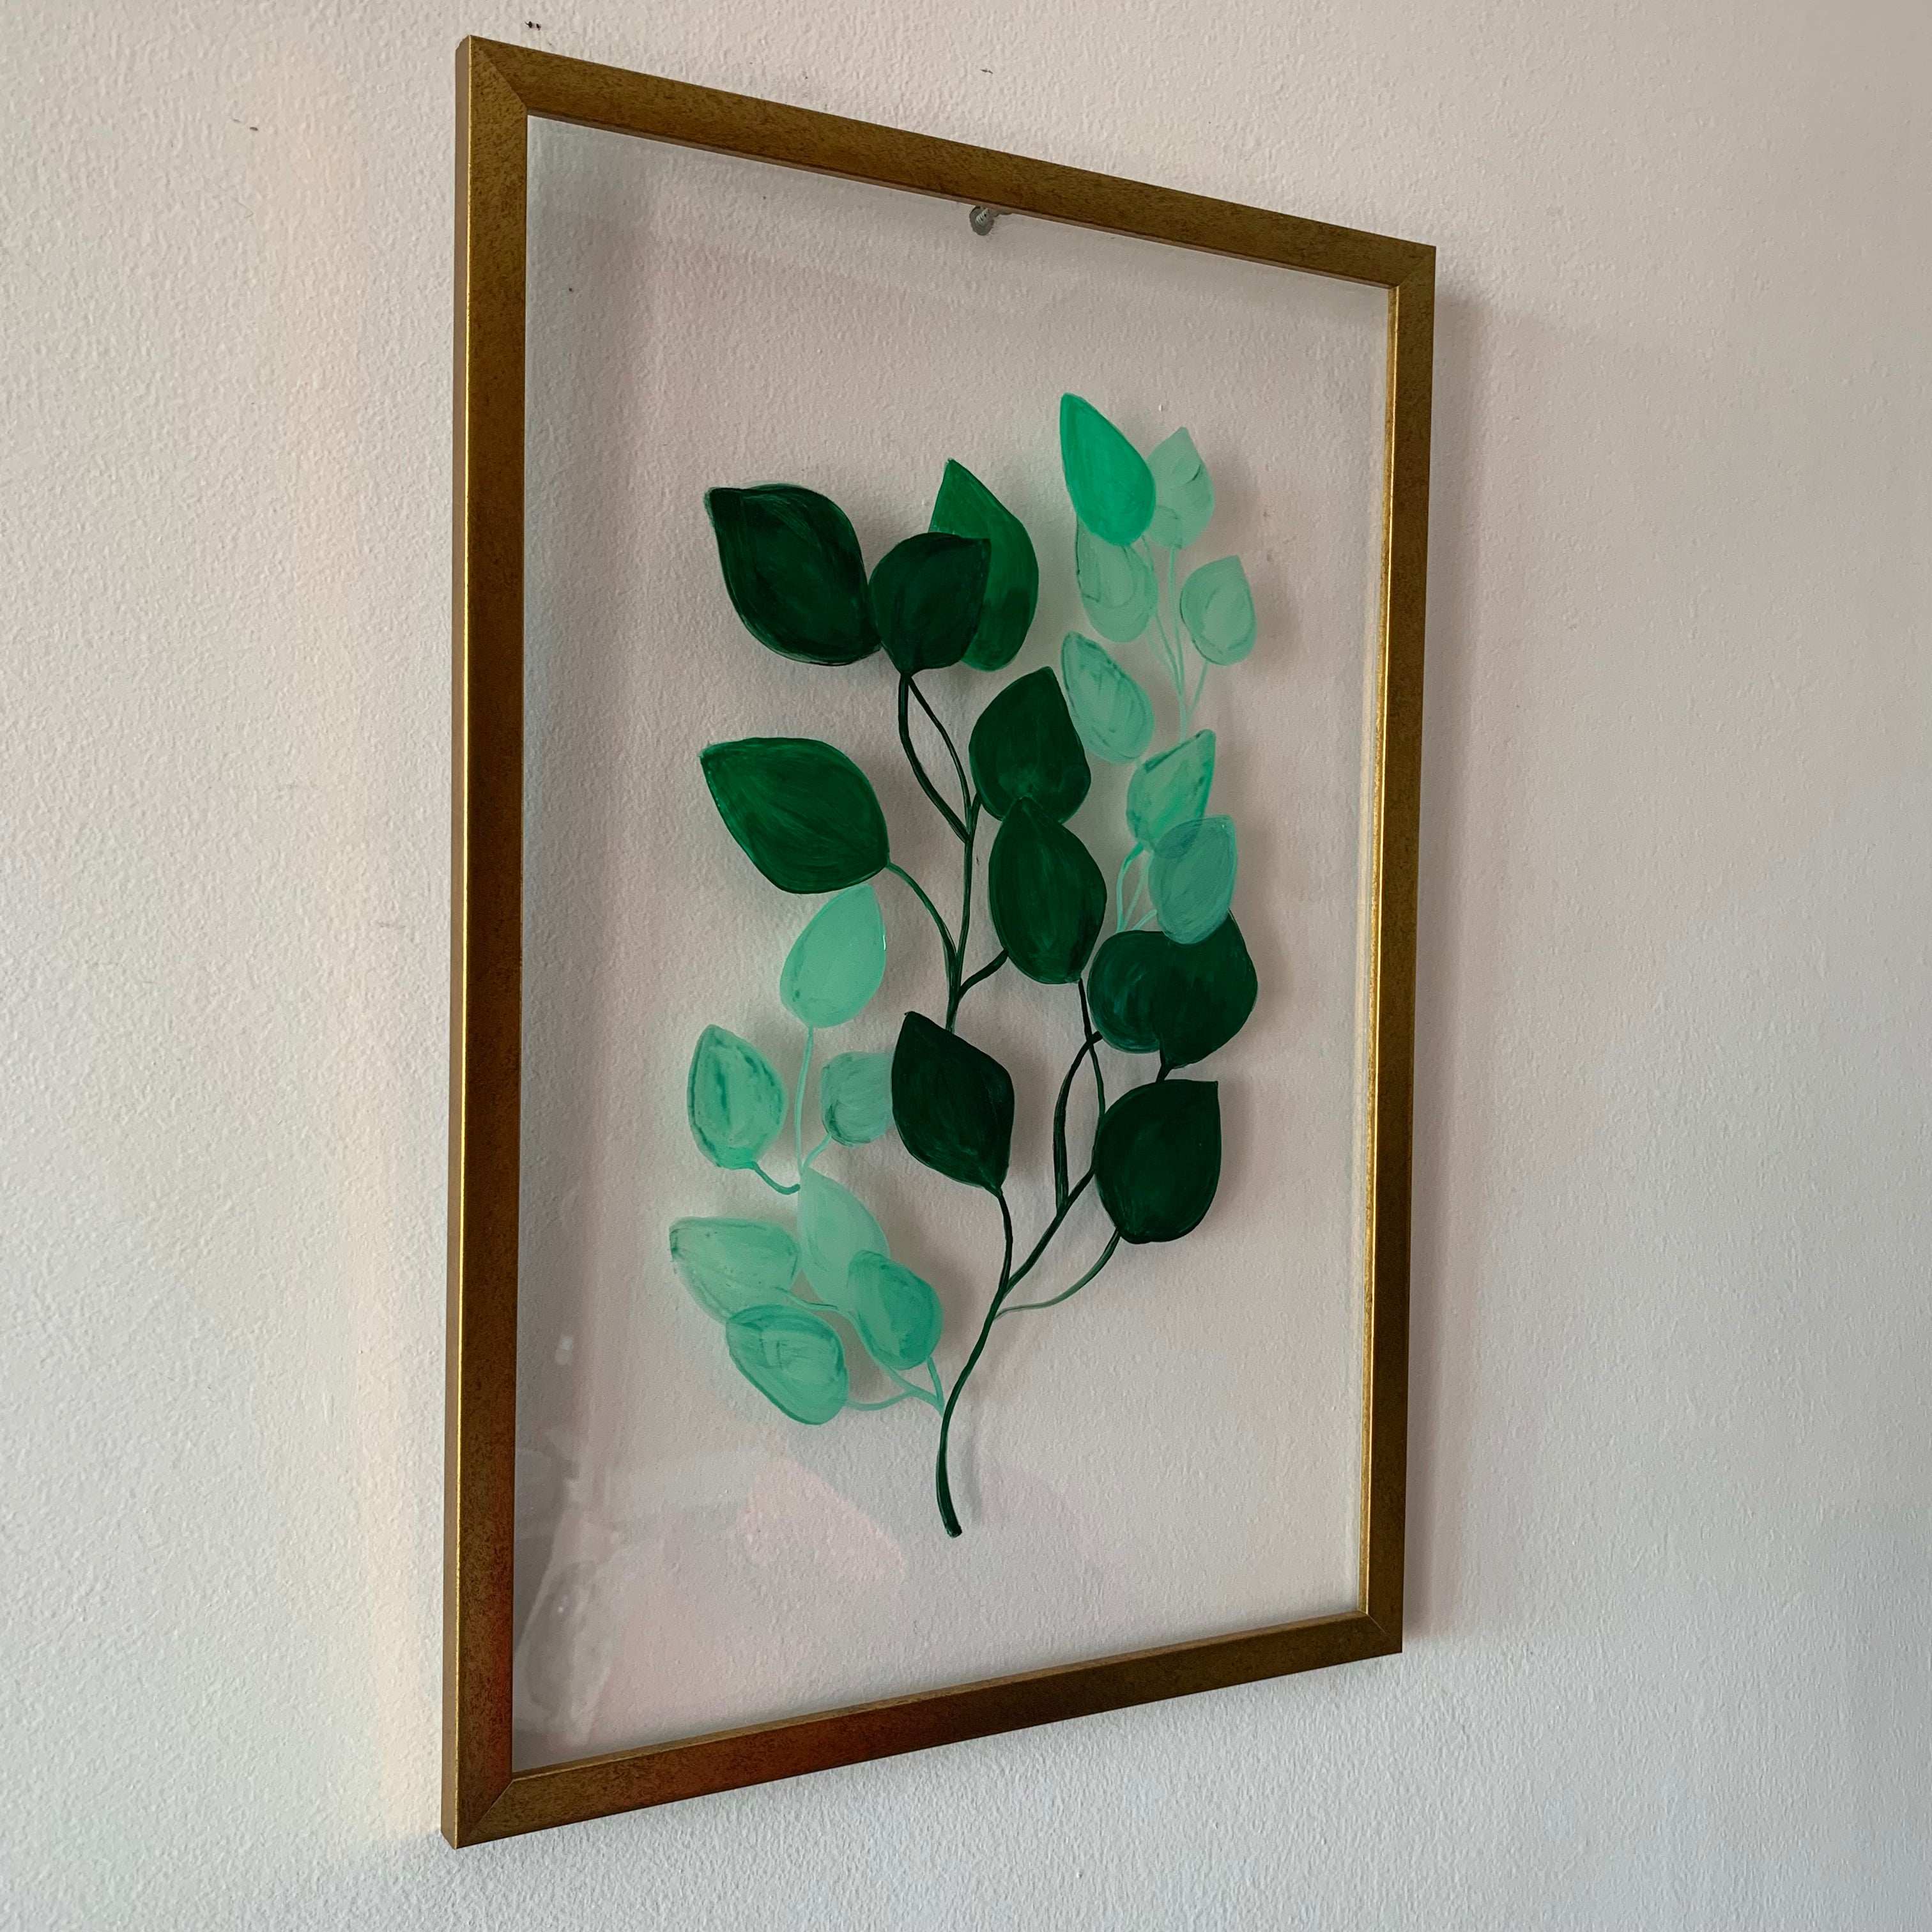 Betel Leaf Painting on Acrylic Sheet